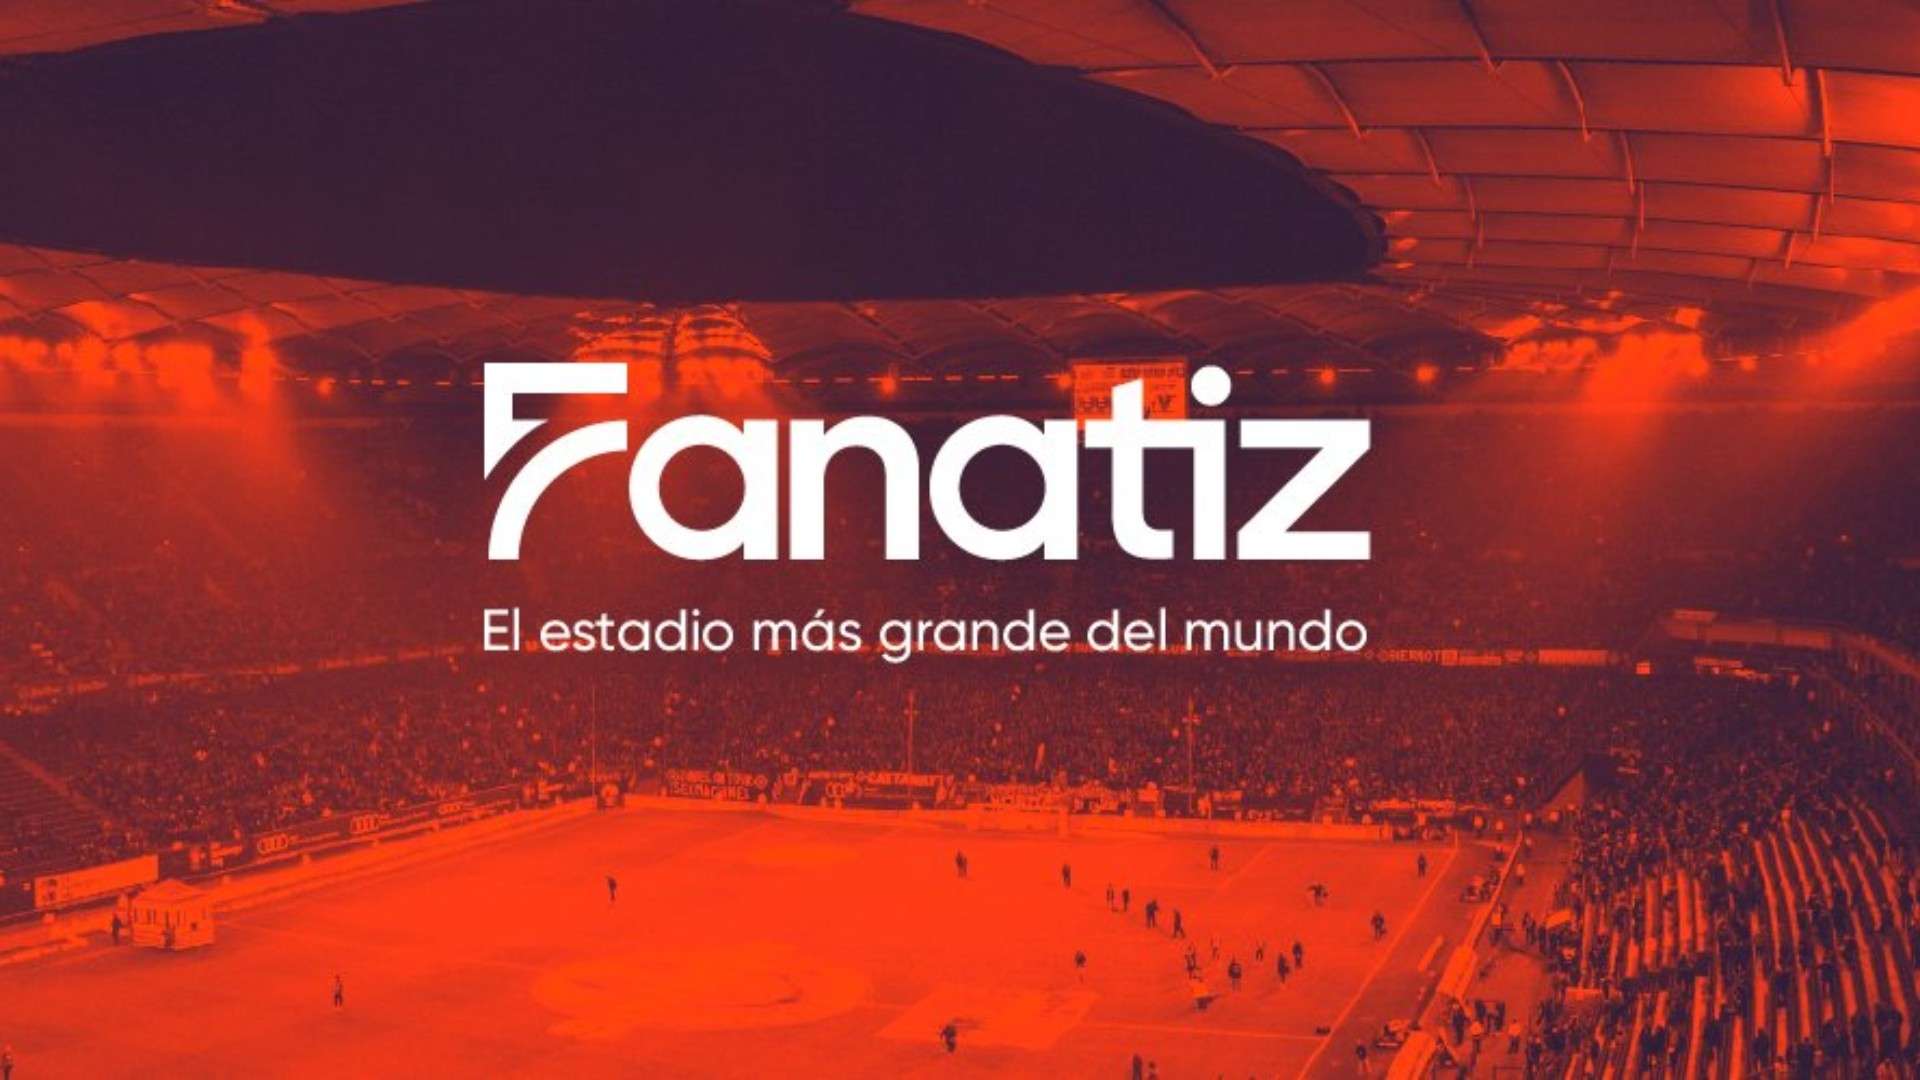 Logo de Fanatiz y slogan